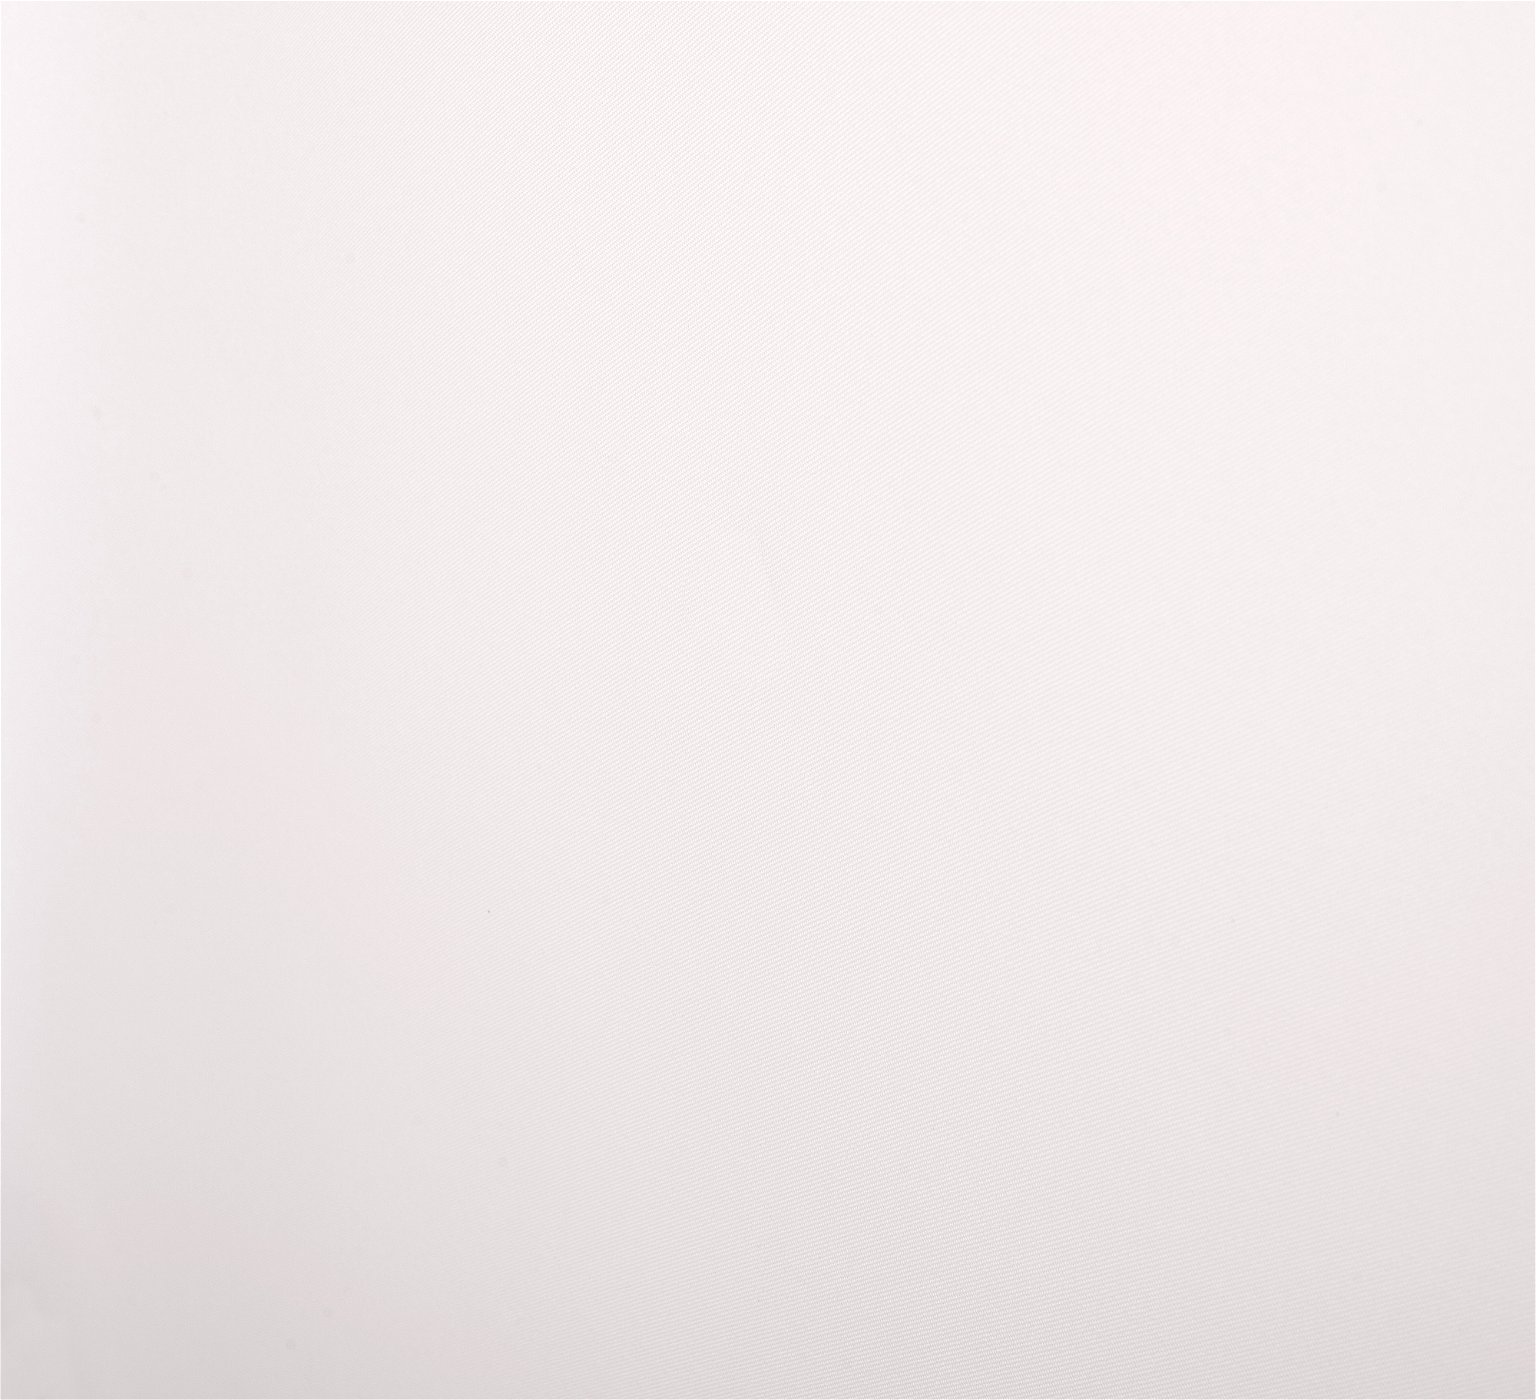 Klasikinė ritininė užuolaida ROME, kreminės sp., 90 x 230 cm, 100 % poliesteris - 3